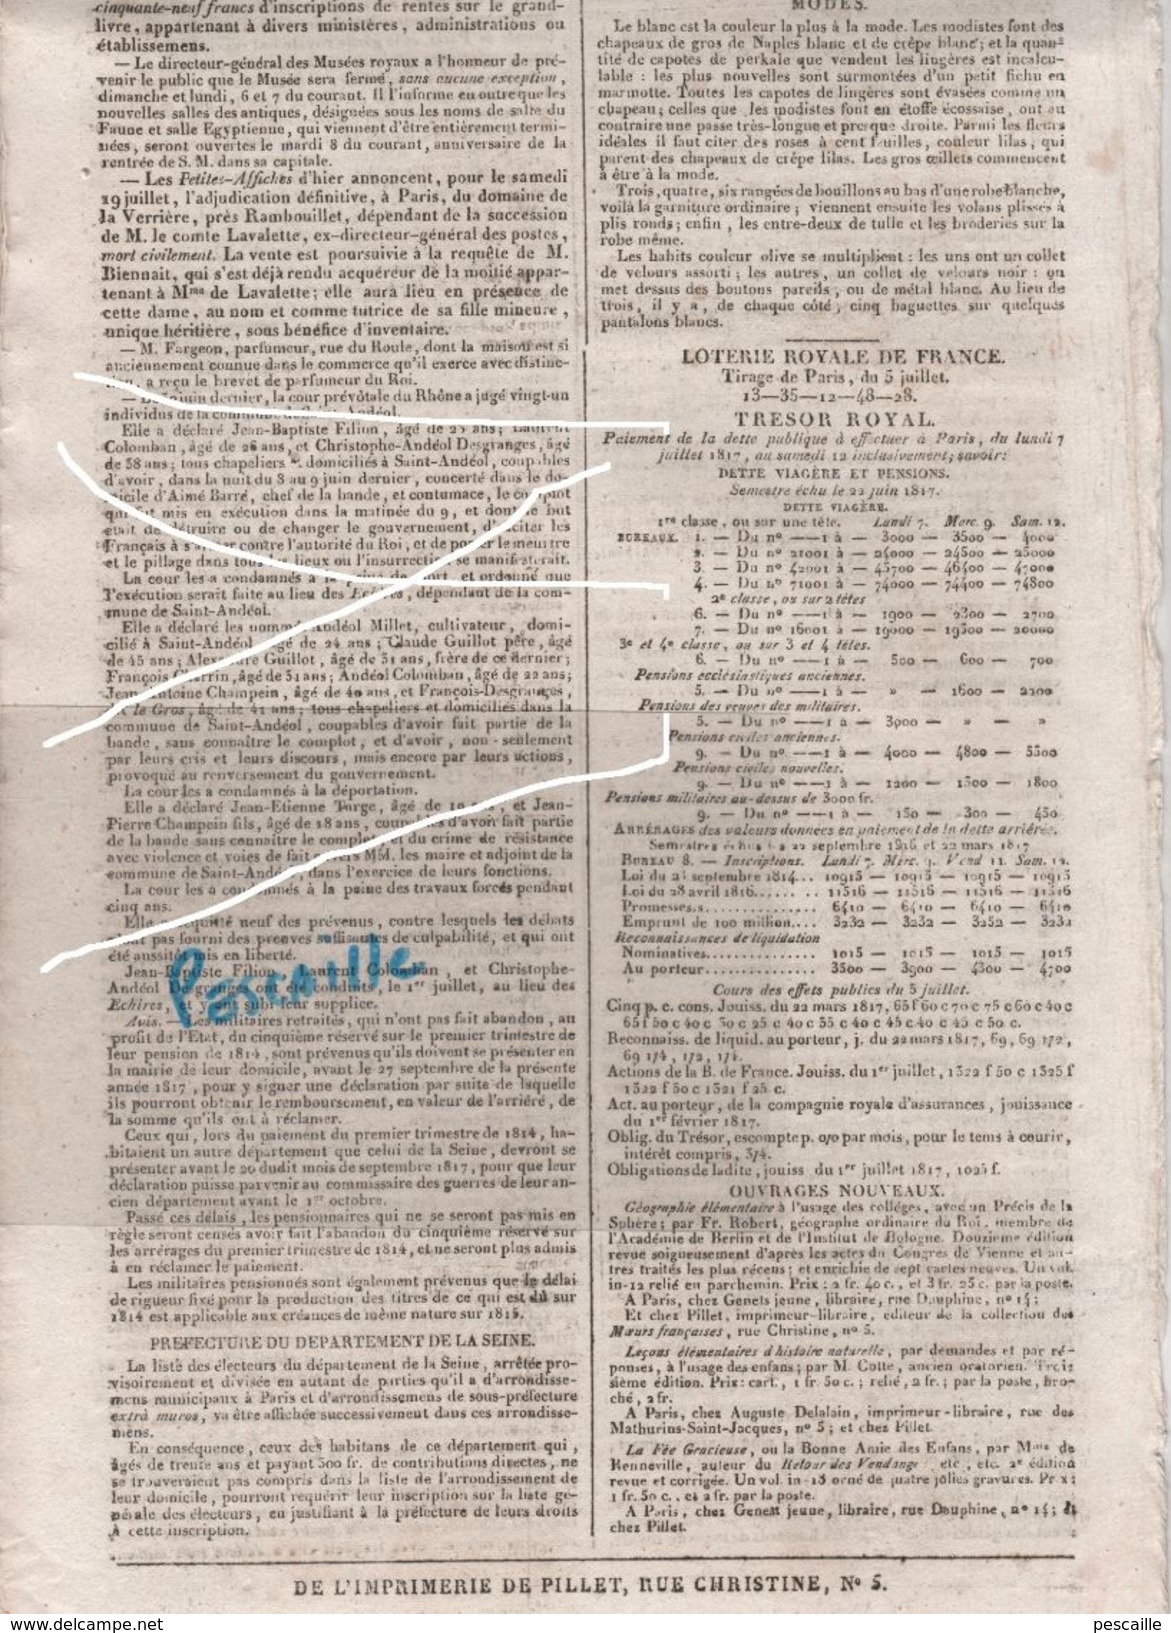 JOURNAL GAZETTE DE FRANCE 06 07 1817 - NEW YORK - SAN SALVADOR - LONDRES IRLANDE - MALAGA - AUTRICHE - SAINT ANDEOL - 1800 - 1849